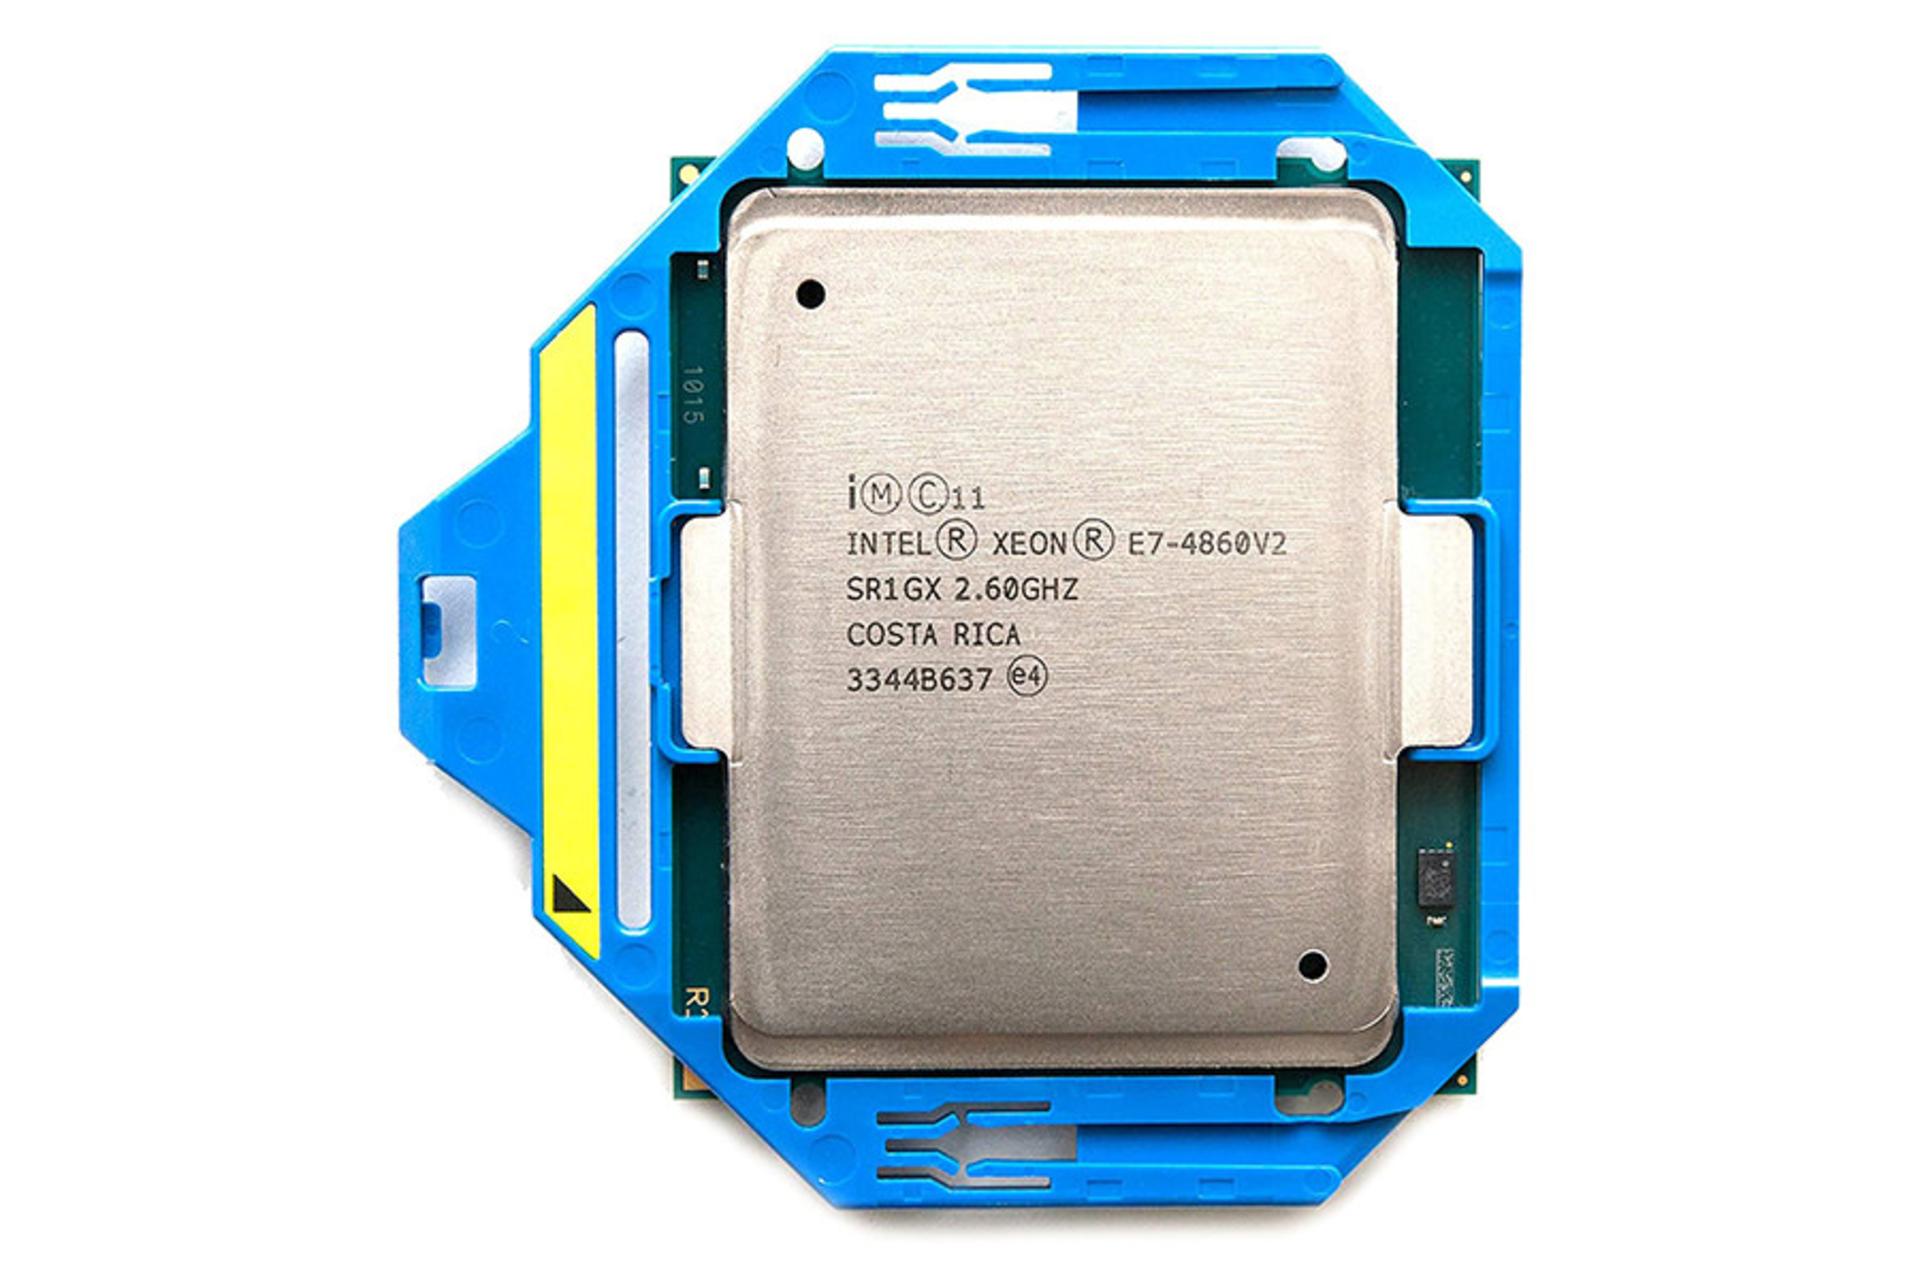 Intel Xeon E7-4860 v2 / اینتل Xeon E7-4860 v2